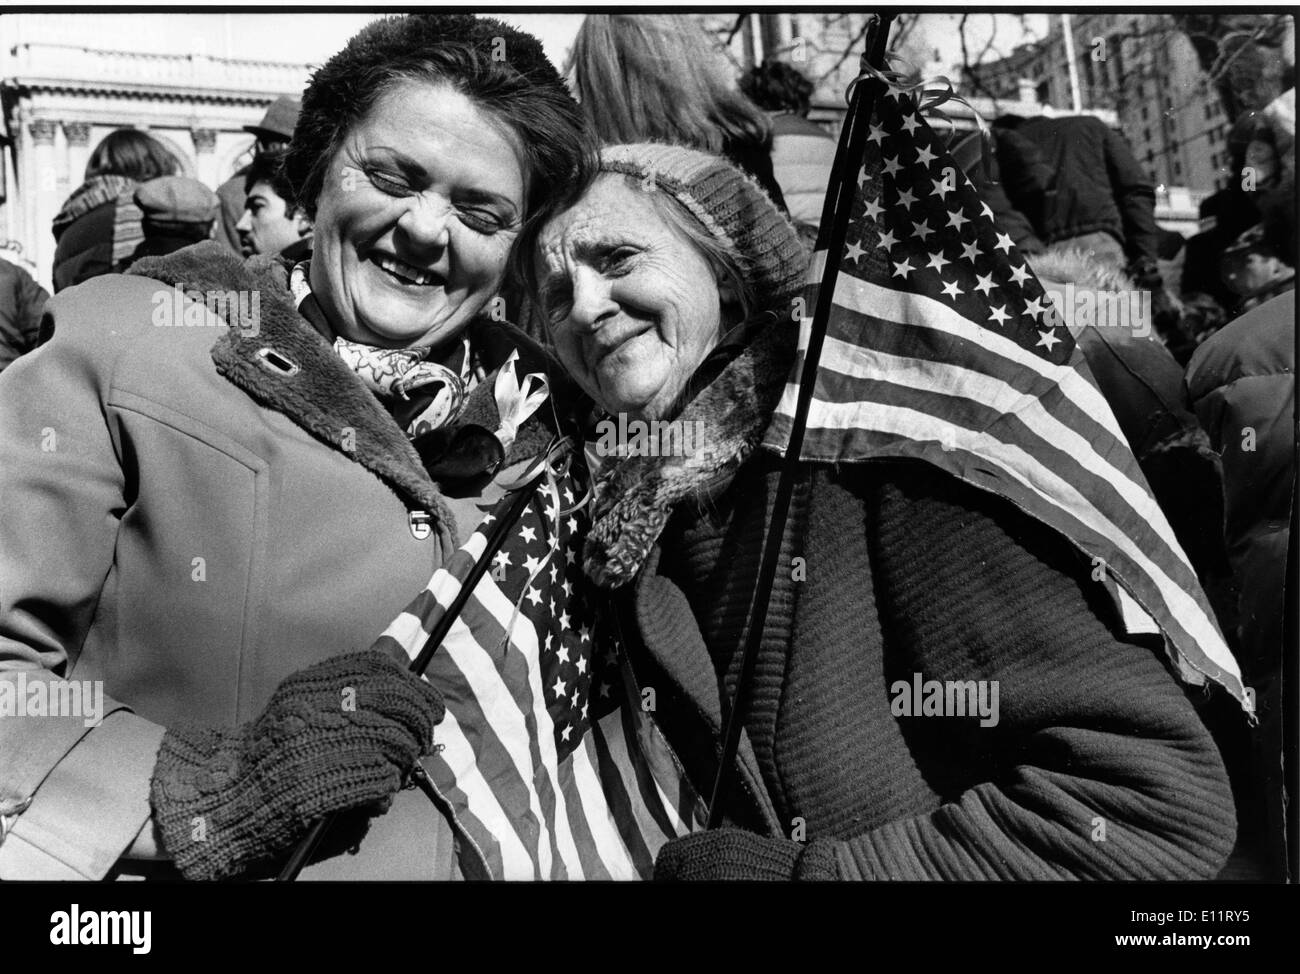 Nov 08, 1979 - Washington, District de Columbia, Etats-Unis - USA au cours de l'appui des Américains de l'Iran une protestation contre la crise des otages en Iran 444 jours. Les preneurs d'otages, déclarant leur solidarité avec d'autres minorités opprimées'' et ''la place particulière des femmes dans l'Islam,'' Publié 13 femmes et noirs dans le milieu de novembre 1979, ne laissant qu'une noire et deux femmes otages. Plus d'un otage, Richard Reine, a été publié en juillet 1980 après qu'il ait été diagnostiqué avec la sclérose en plaques. Les 52 autres otages ont été retenues en captivité jusqu'en janvier 1981 Banque D'Images